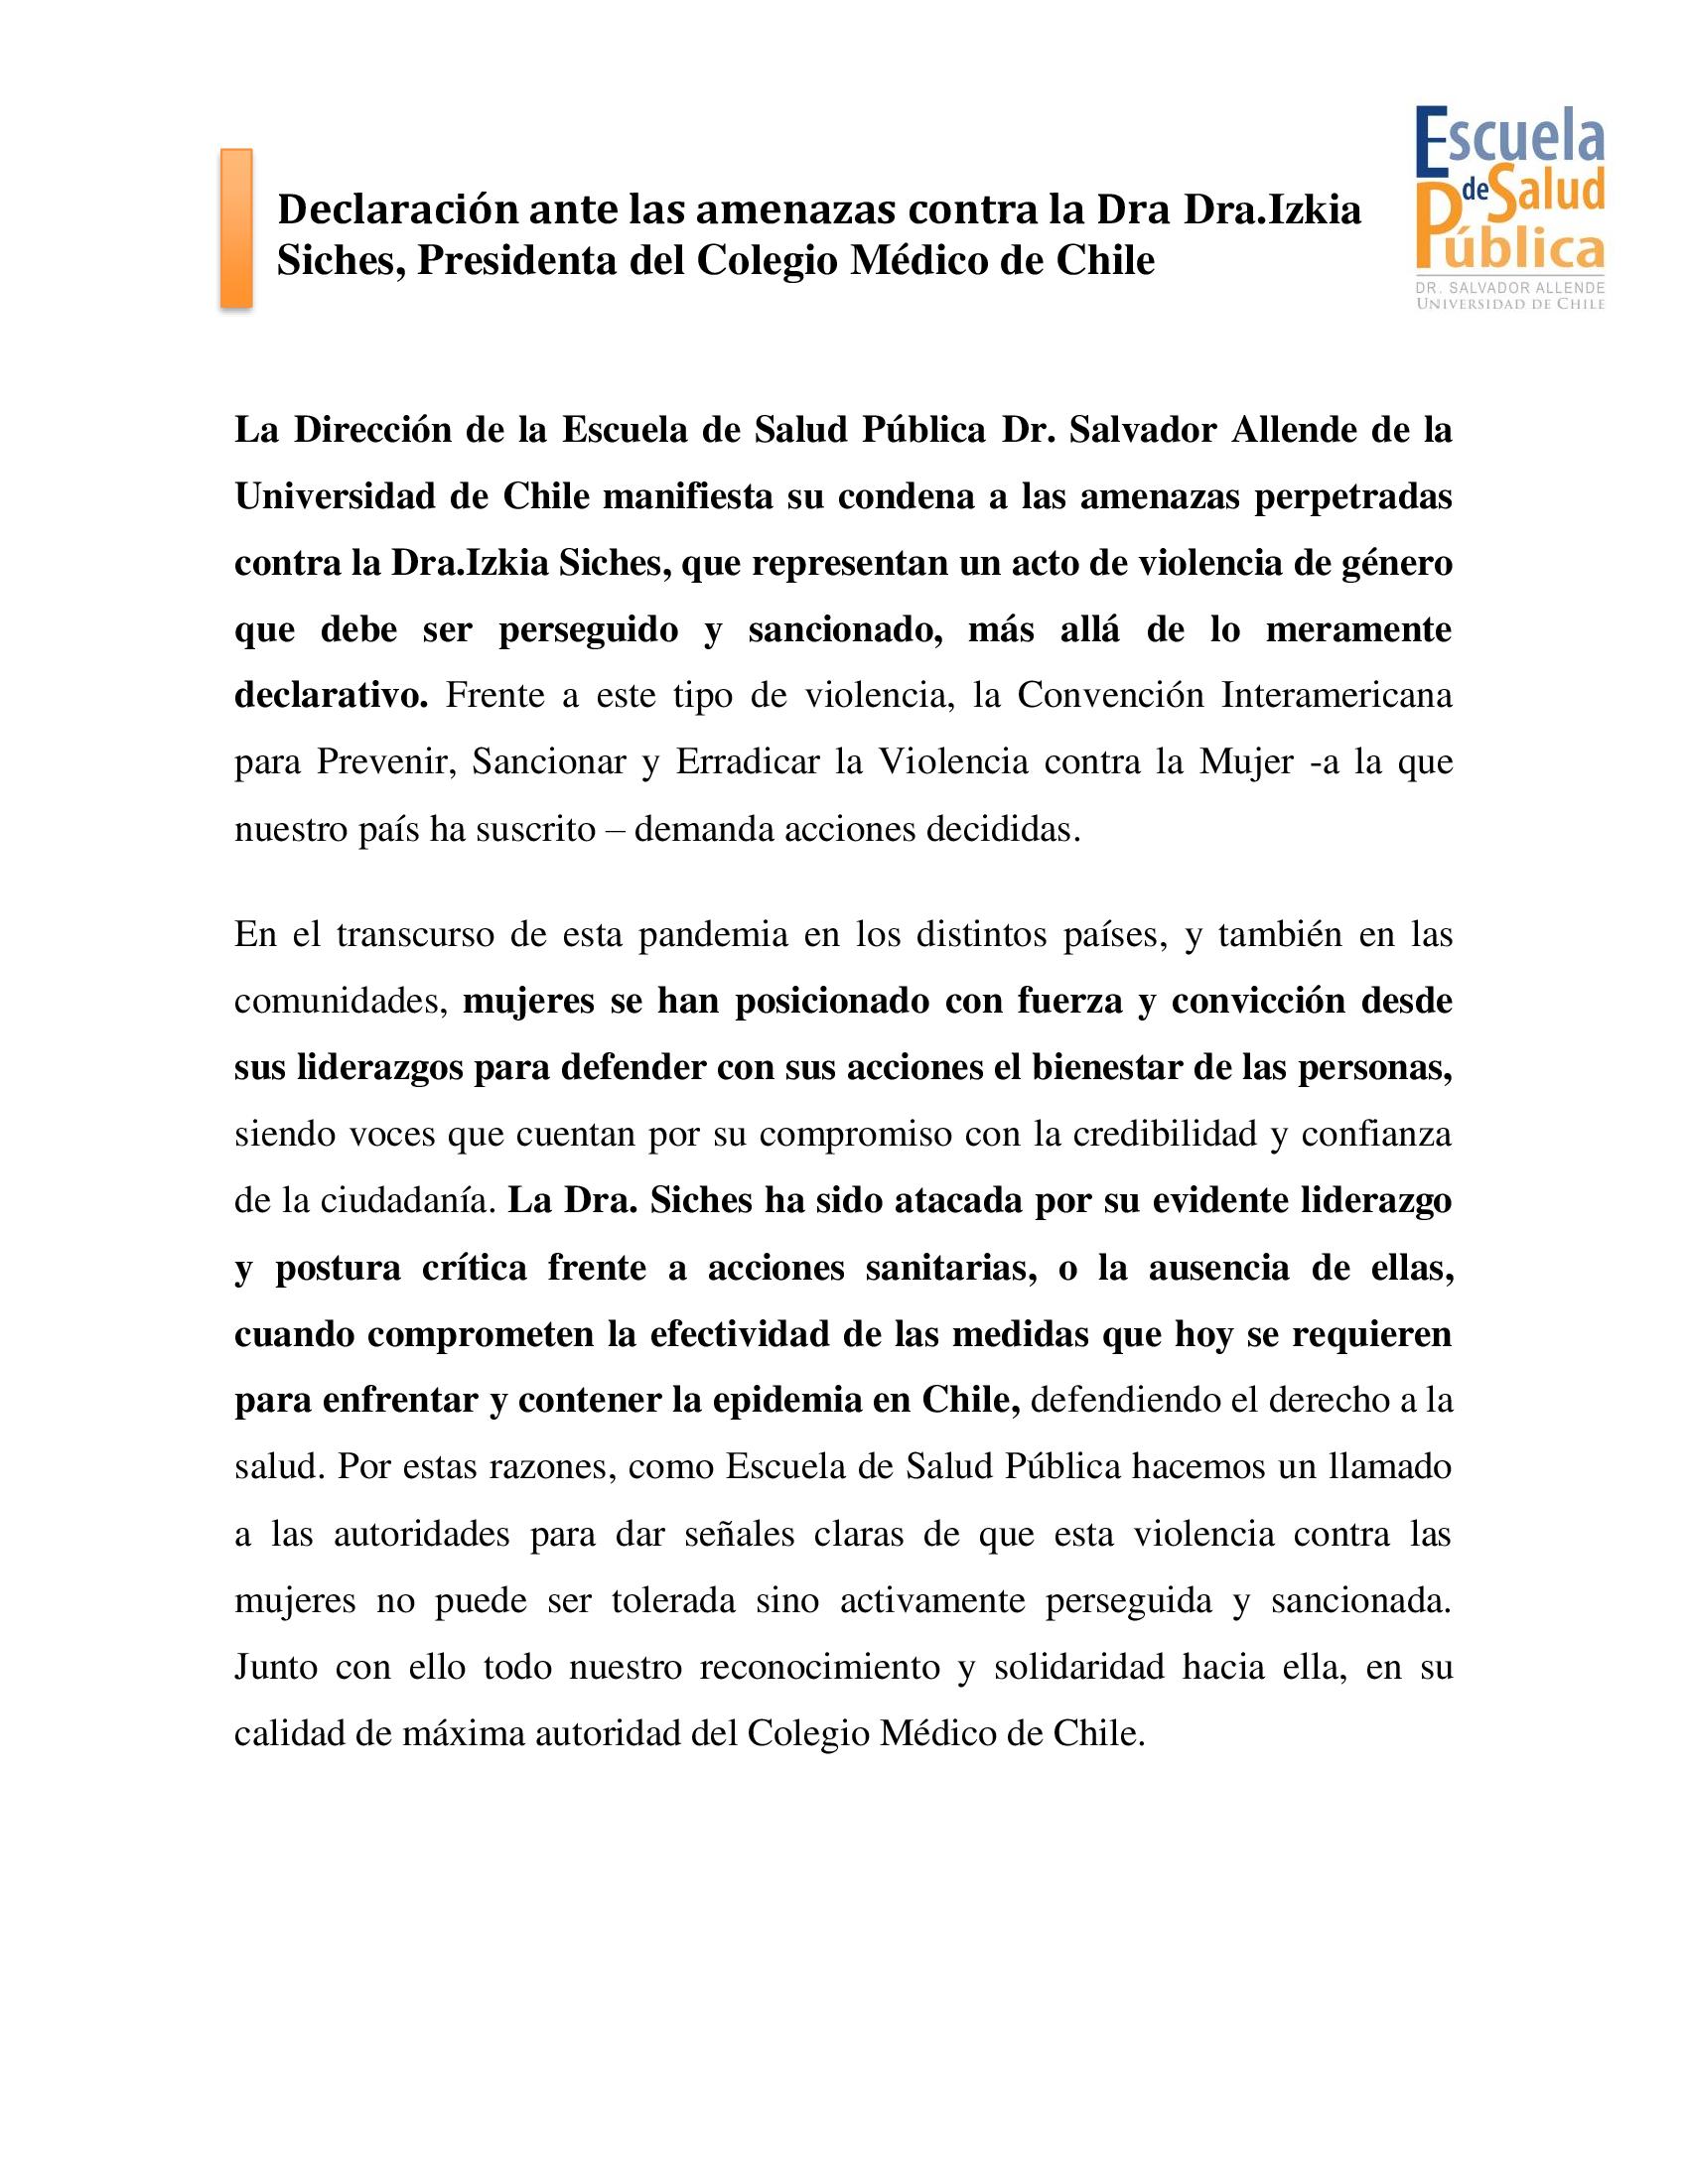 Declaración Dirección Escuela de Salud Pública Universidad de Chile